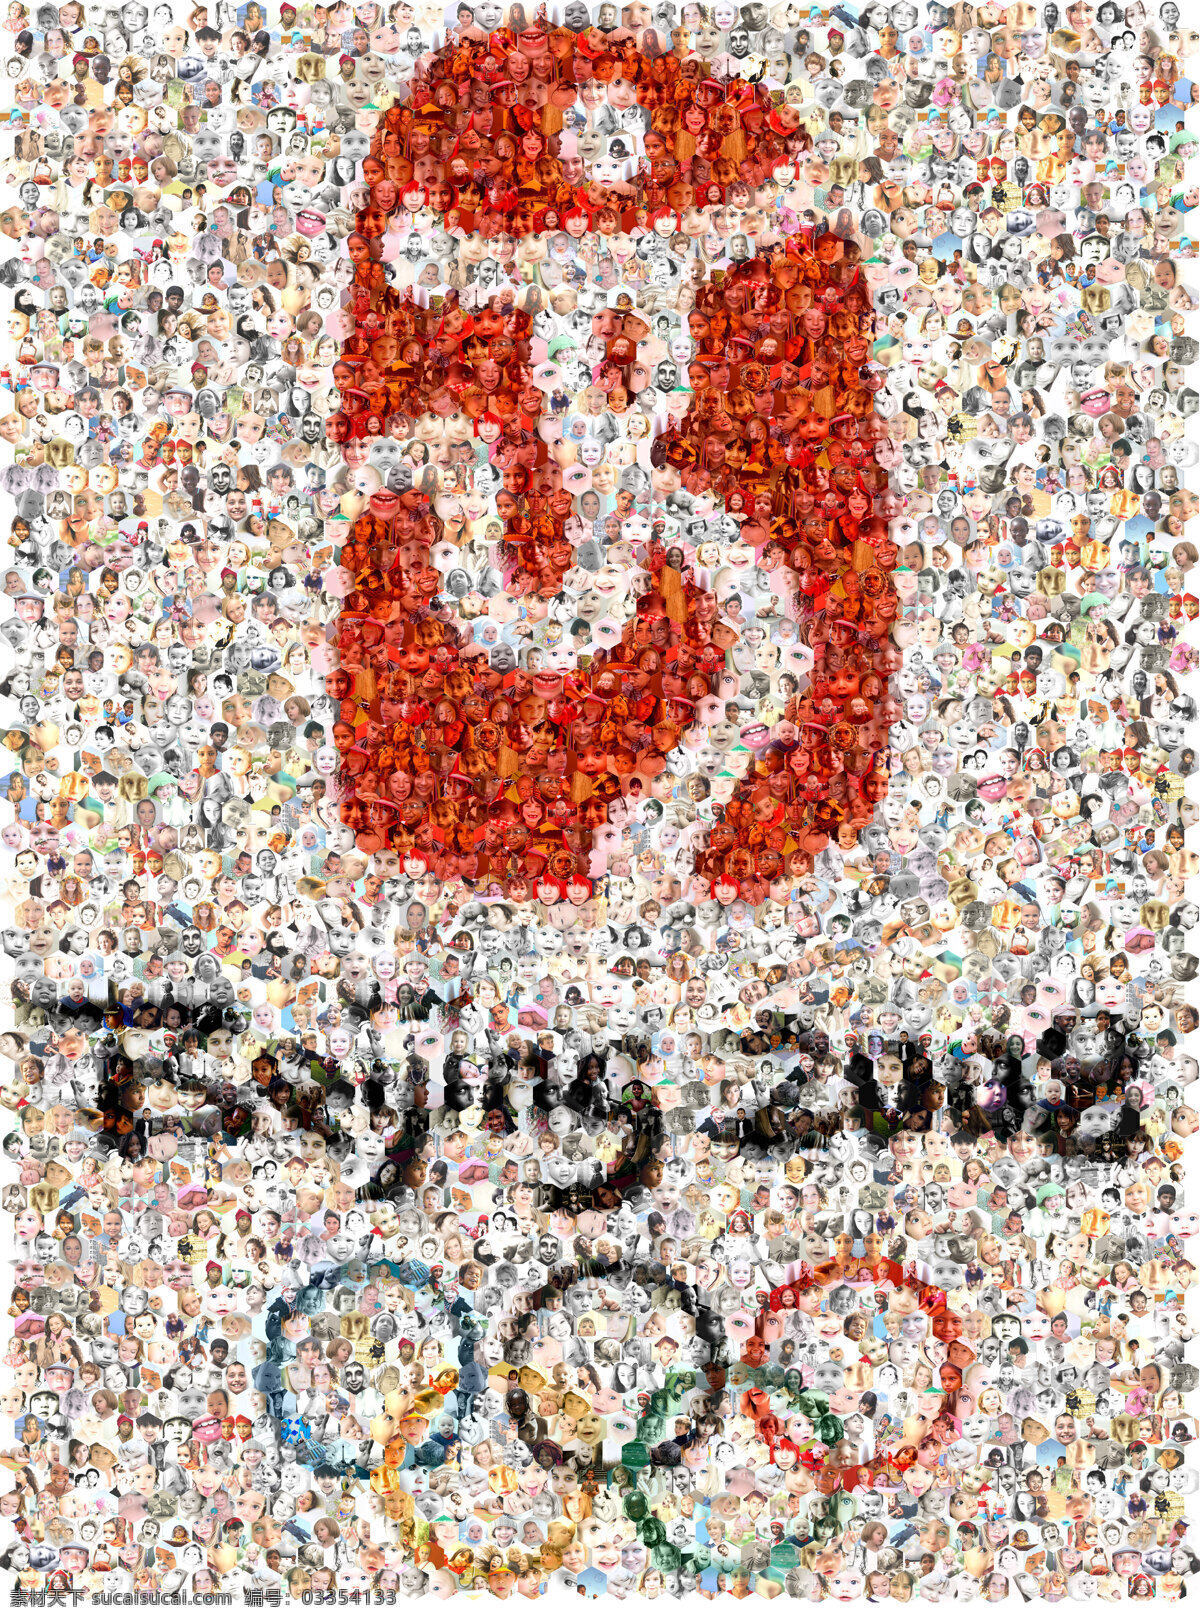 北京 奥运会 笑脸 拼图 2008 中国印 马赛克 小宝宝 设计图库